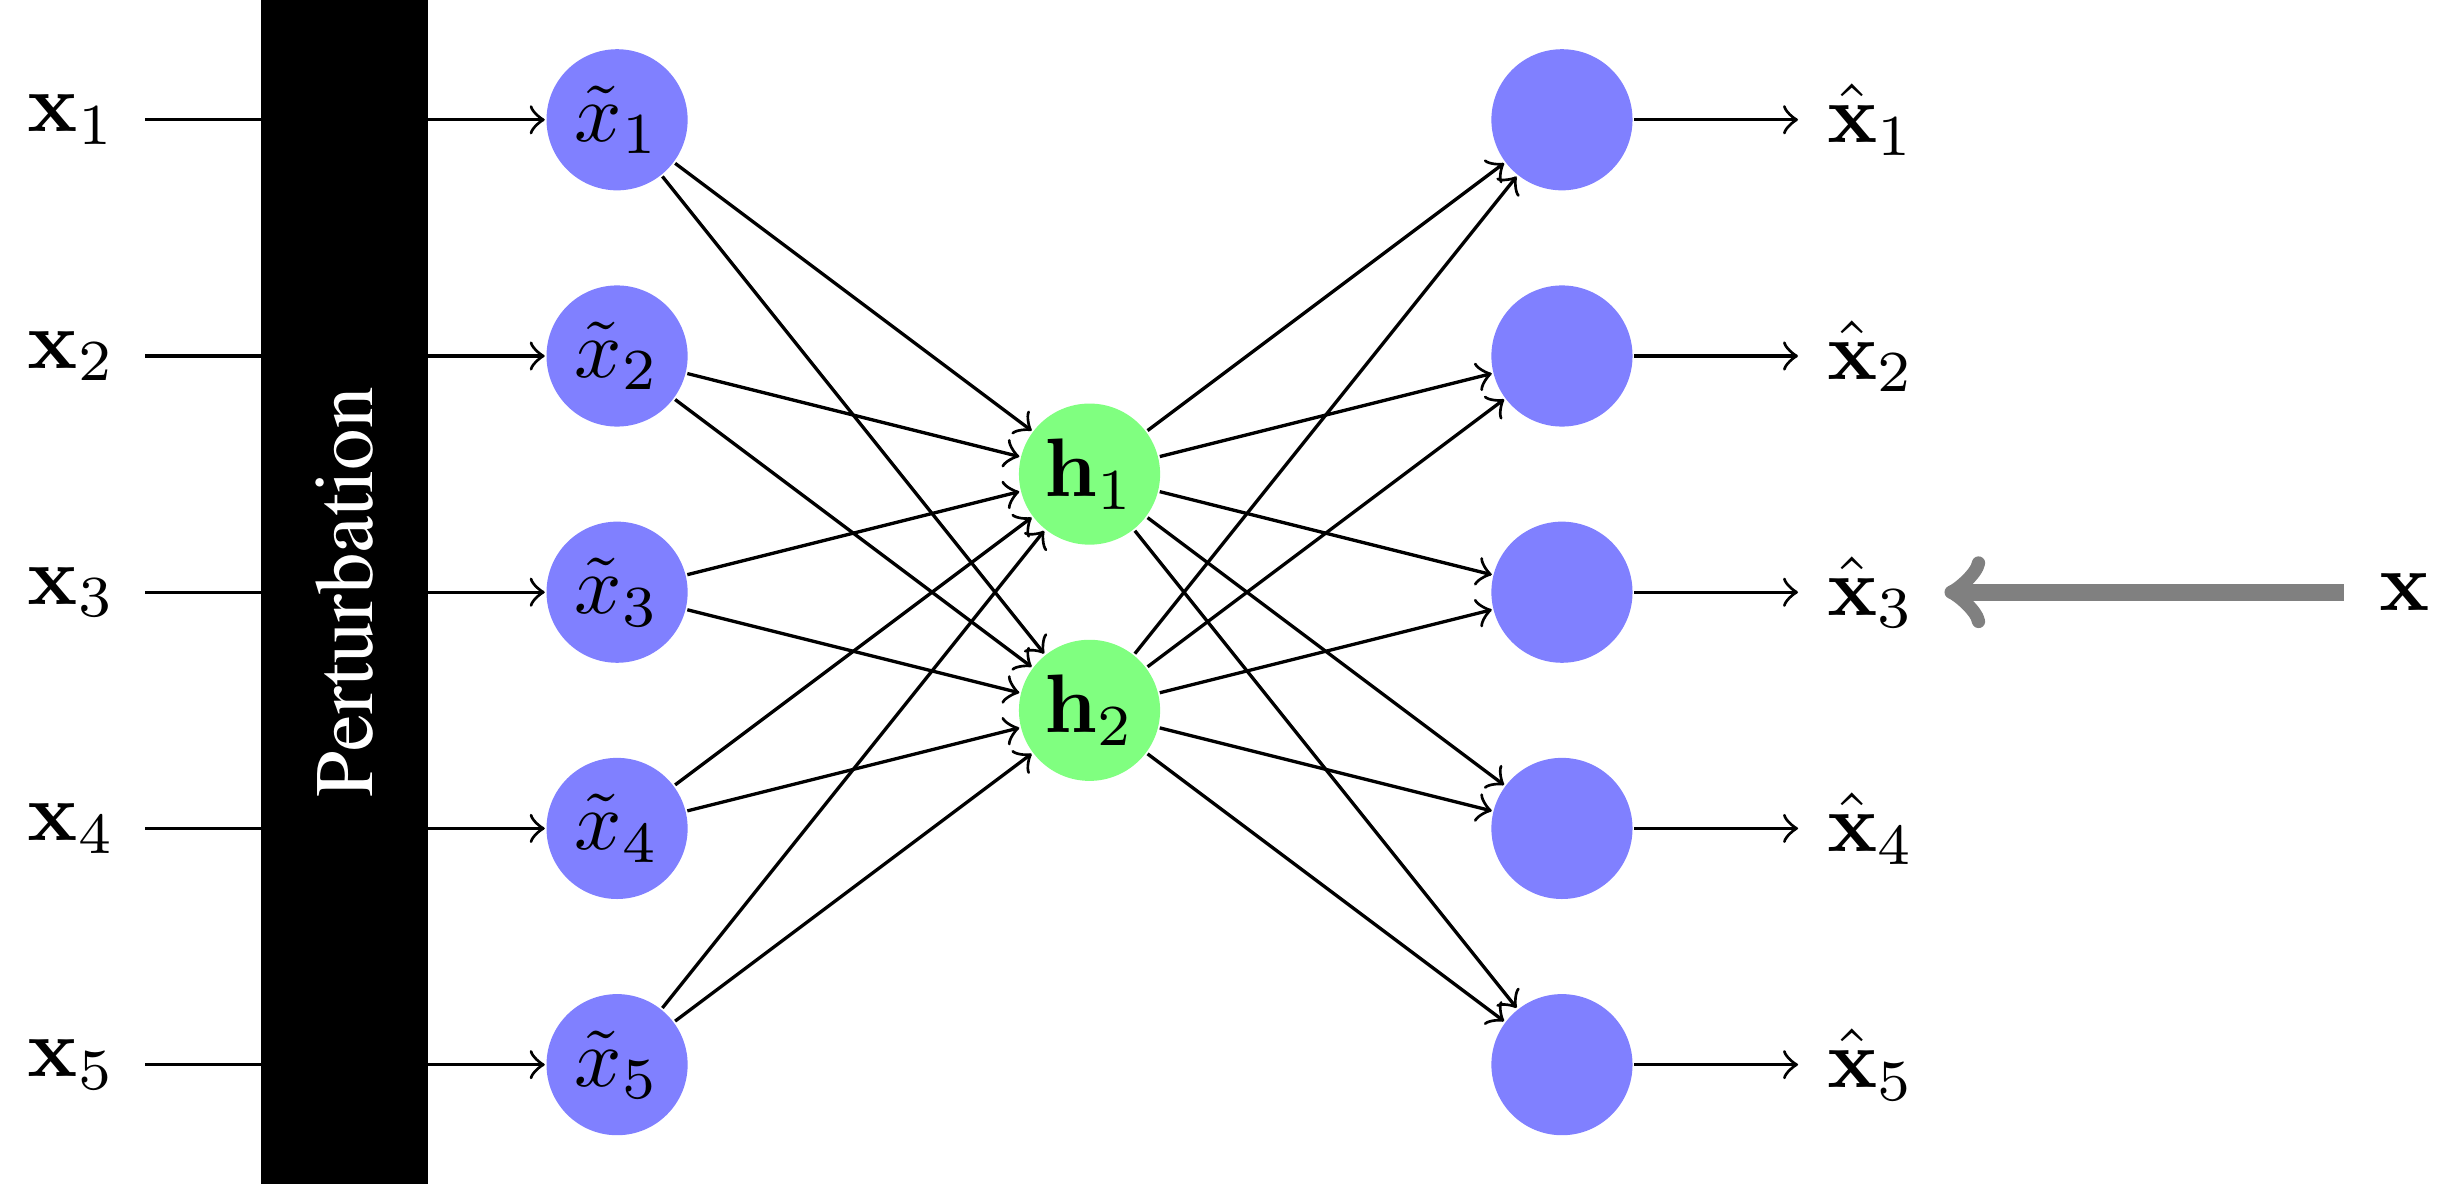 Apprendre un réseau under-complete en ajoutant de la perturbation